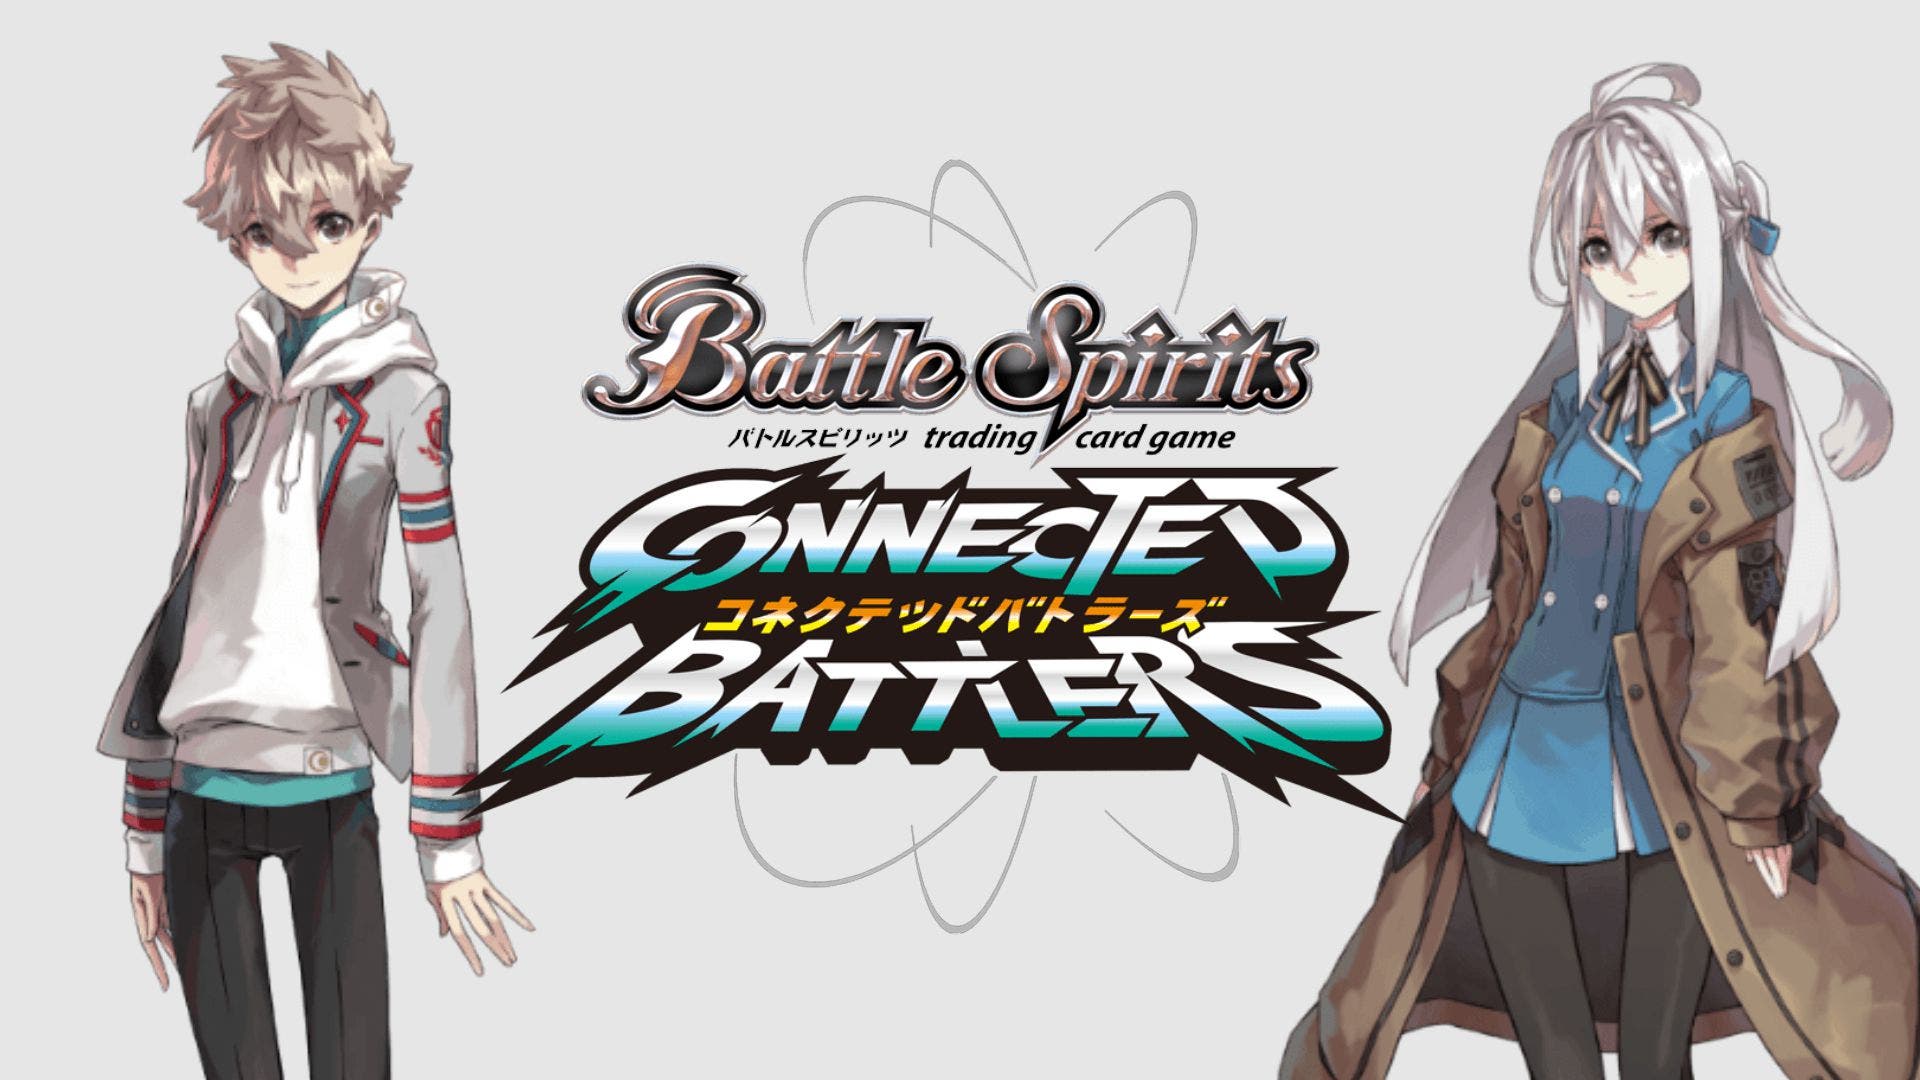 Battle Spirits: Connected Battlers llegará este invierno a las Nintendo Switch japonesas